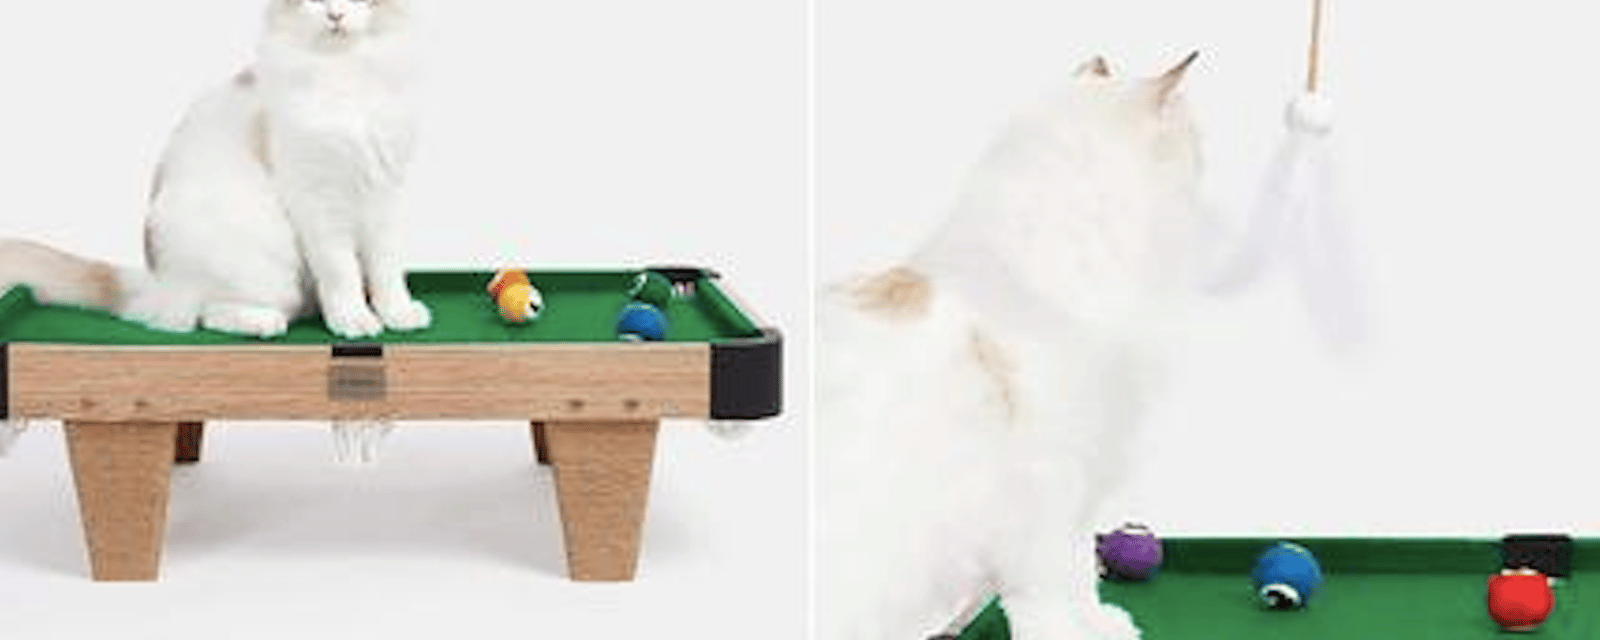 Gadget insolite: une table de billard pour chat